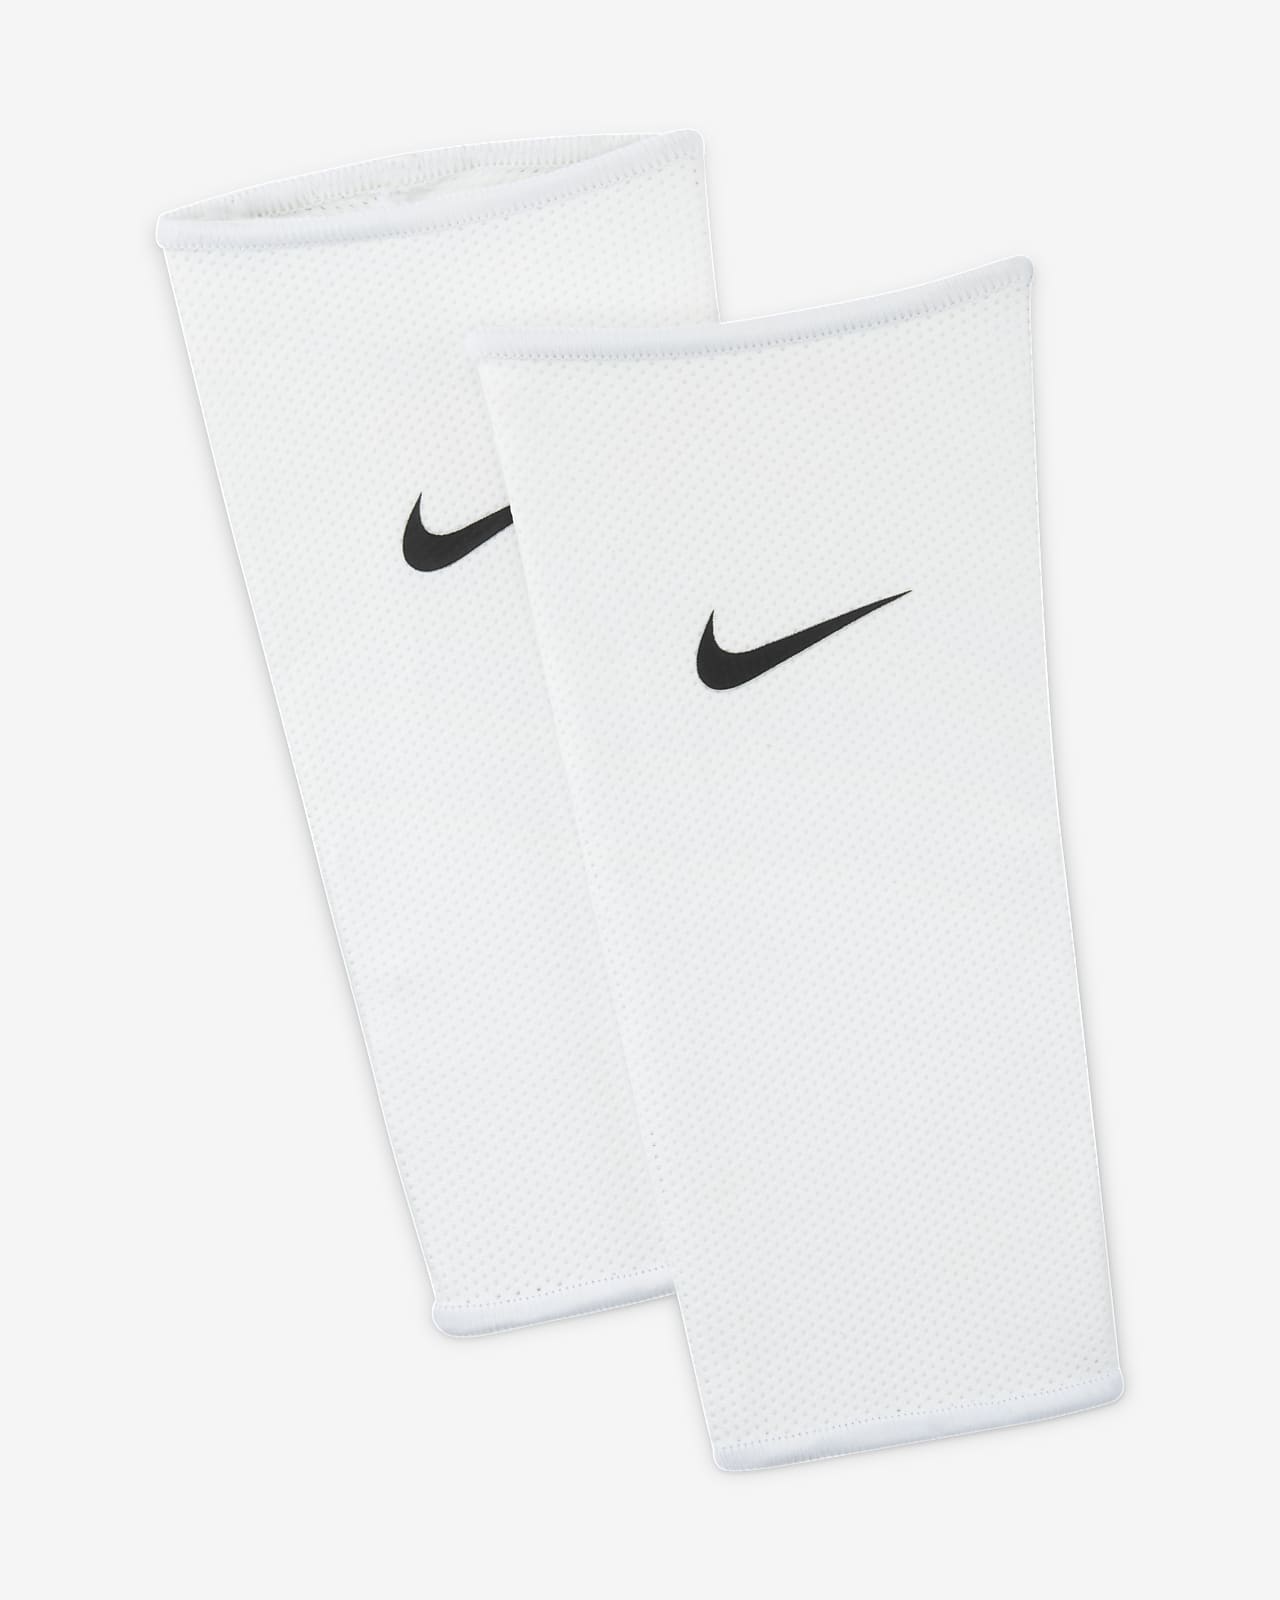 Nike Guard Lock Mangas para espinilleras de fútbol (1 par)